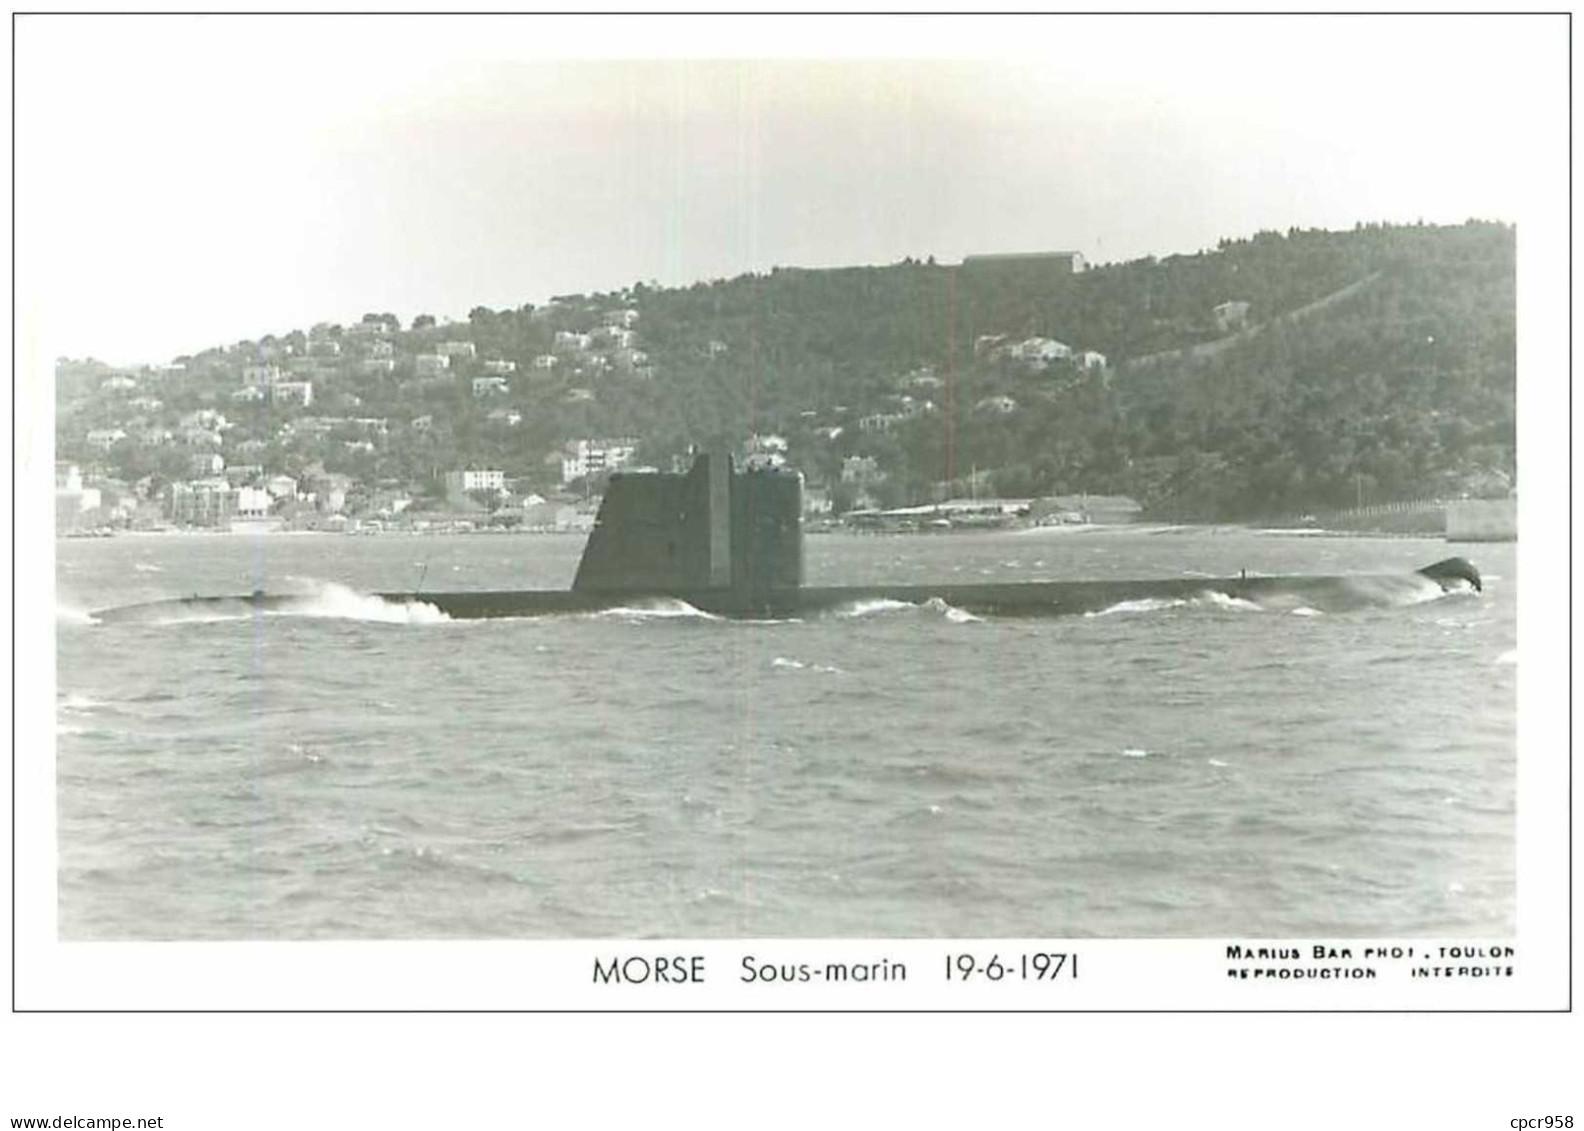 SOUS-MARINS.n°24880.PHOTO DE MARIUS BAR.MORSE.19.6.1971 - Submarines